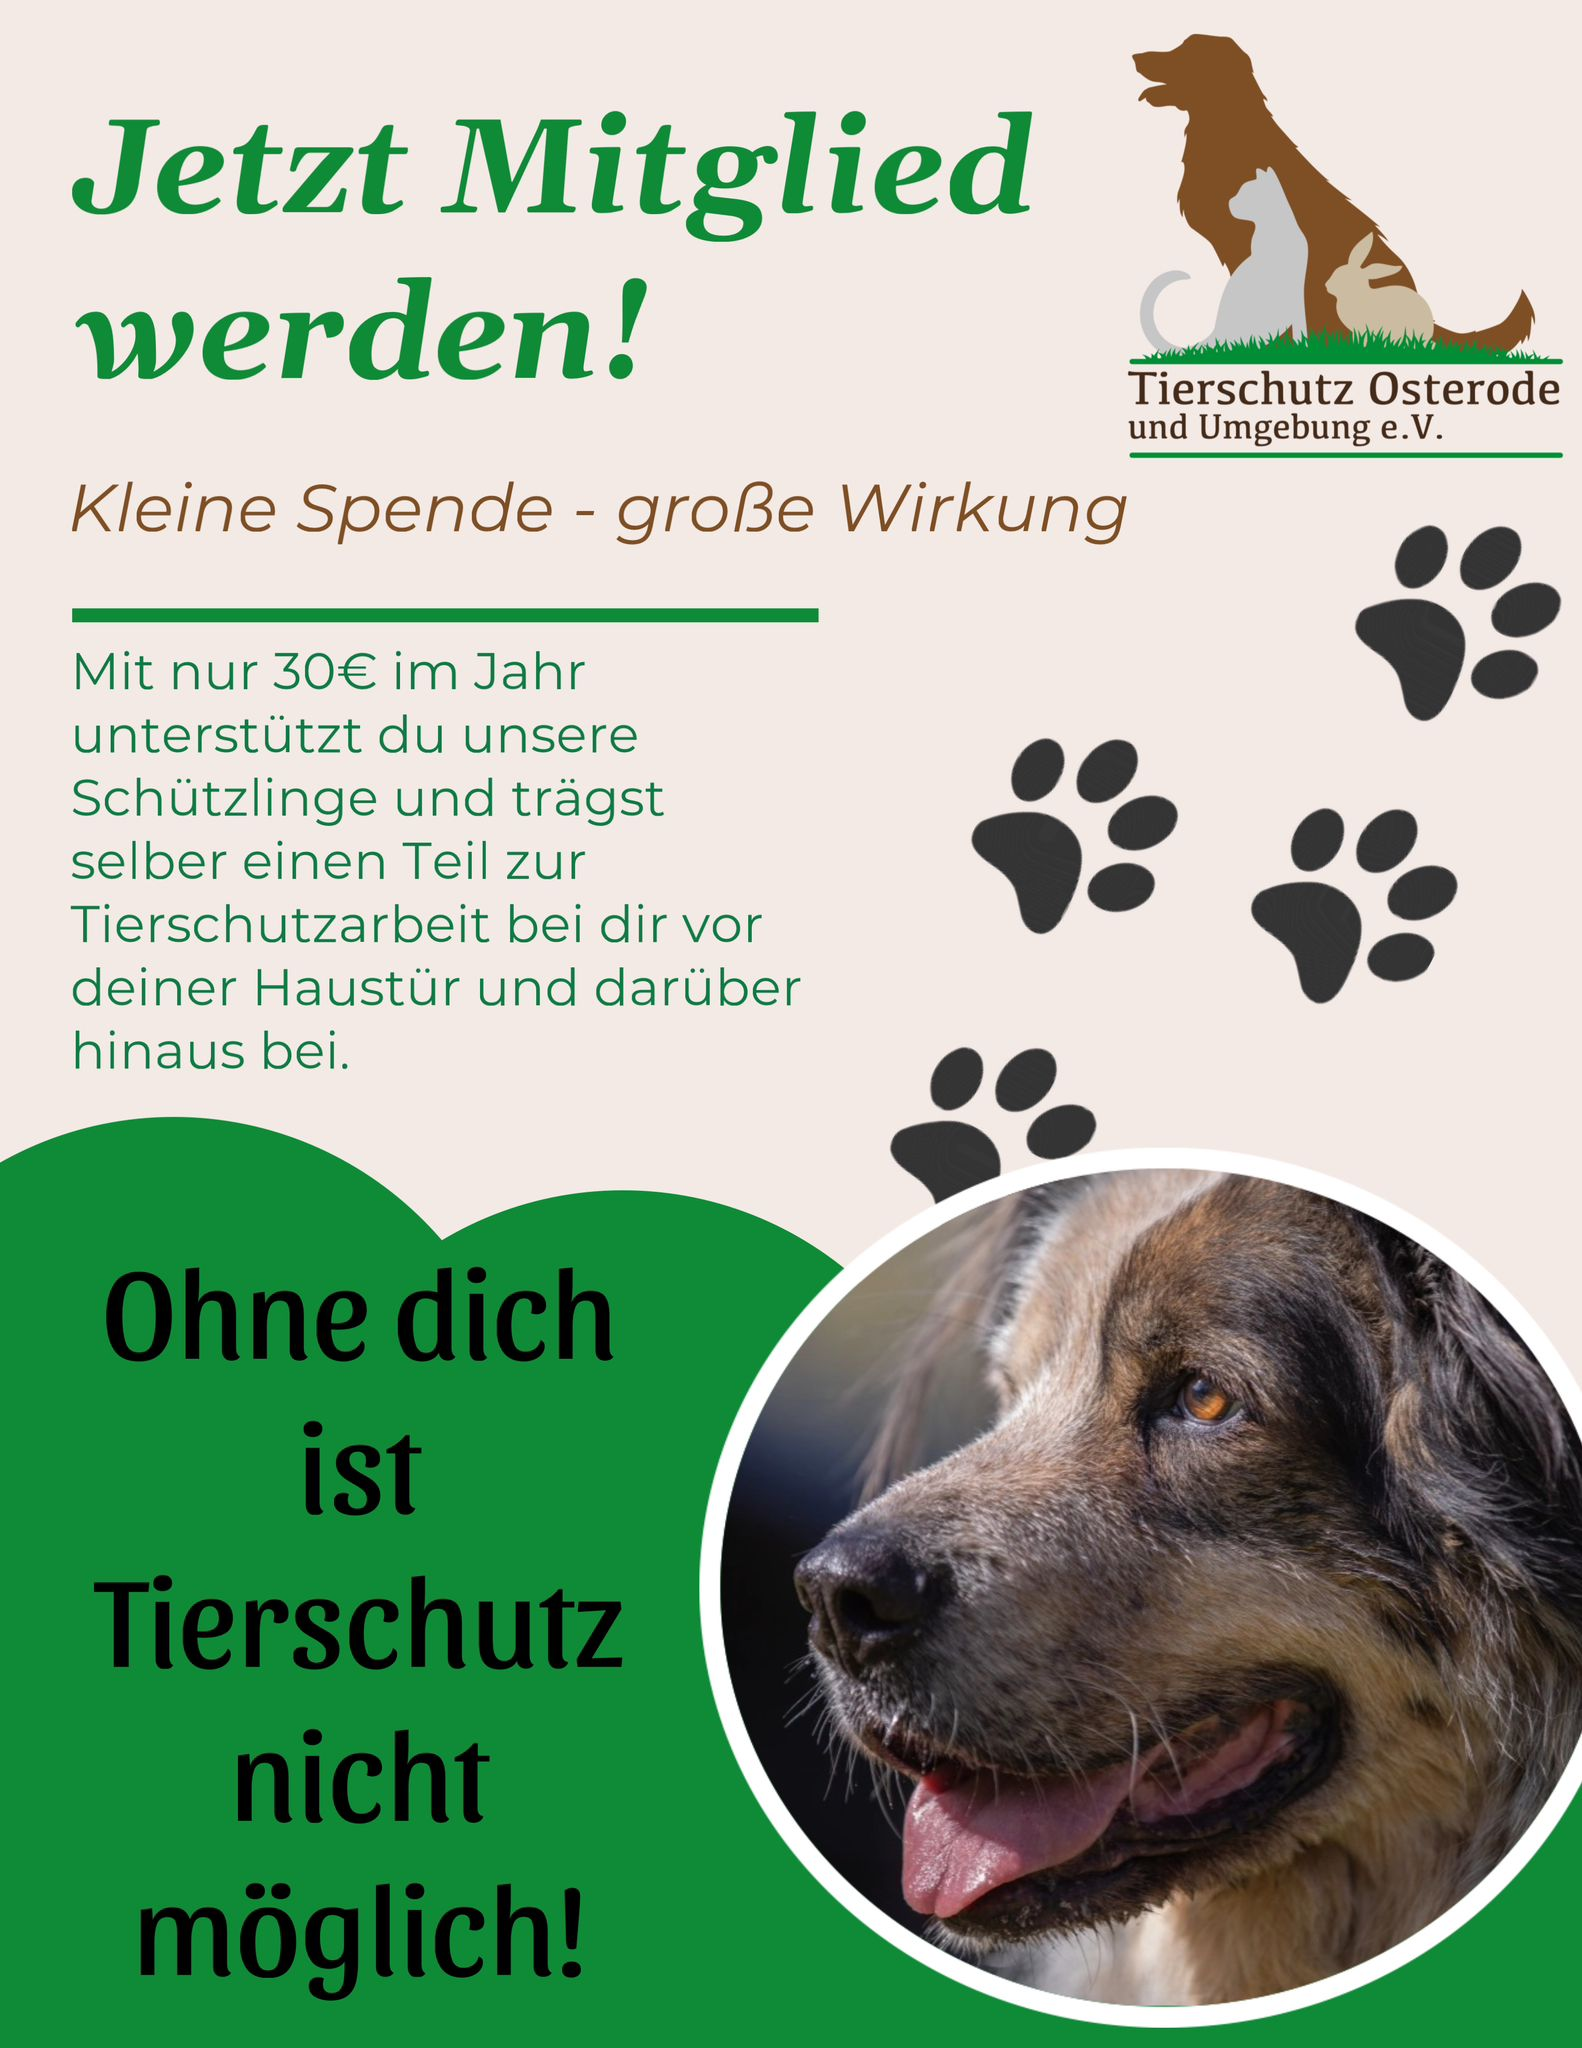 (c) Tierschutz-osterode.de